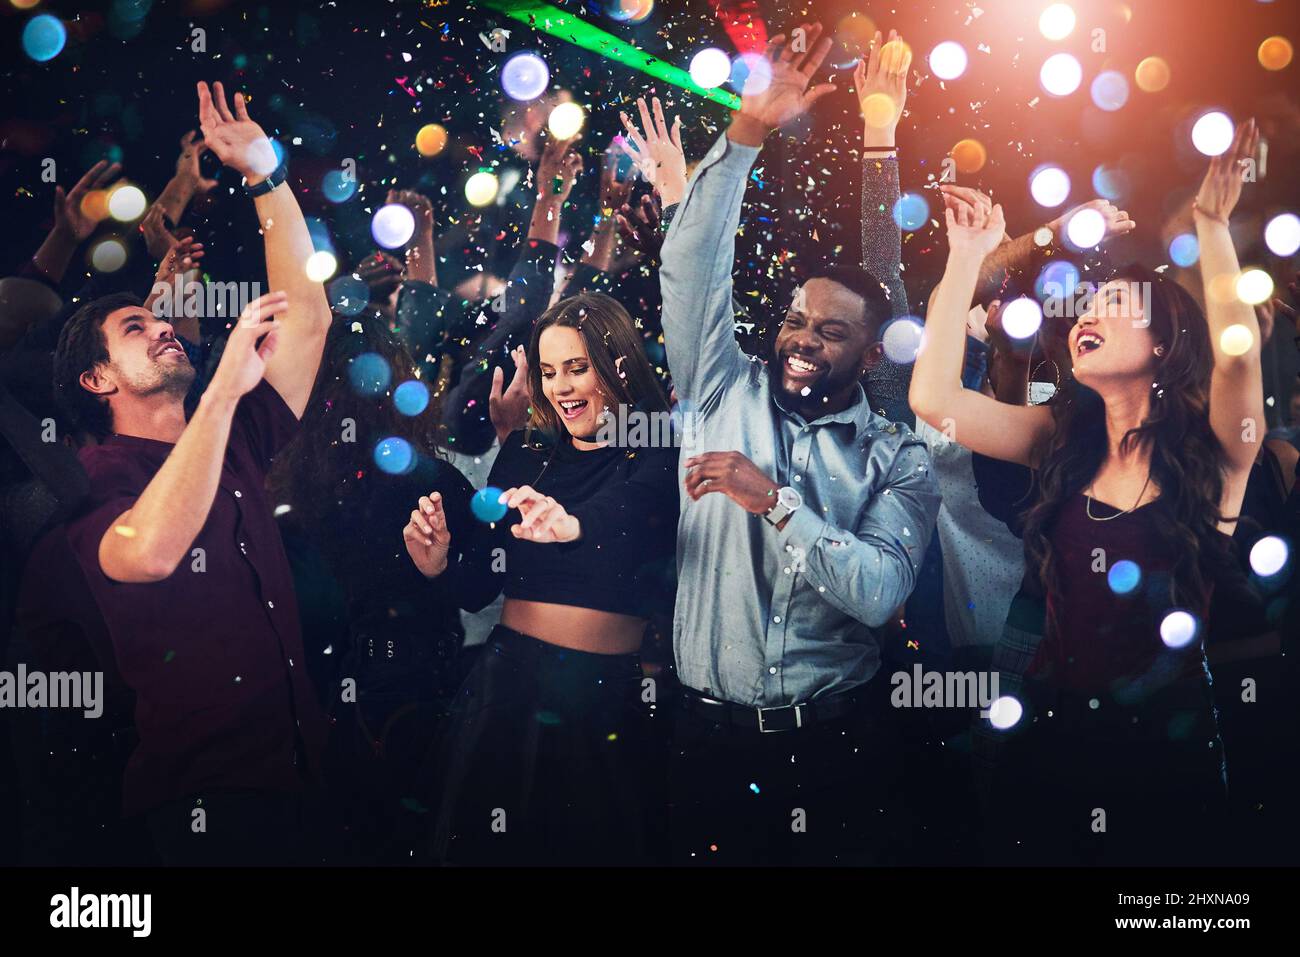 Si une fête est lancée, prenez-la. Photo rognée d'un groupe diversifié de jeunes amis dansant lors d'une fête la nuit. Banque D'Images